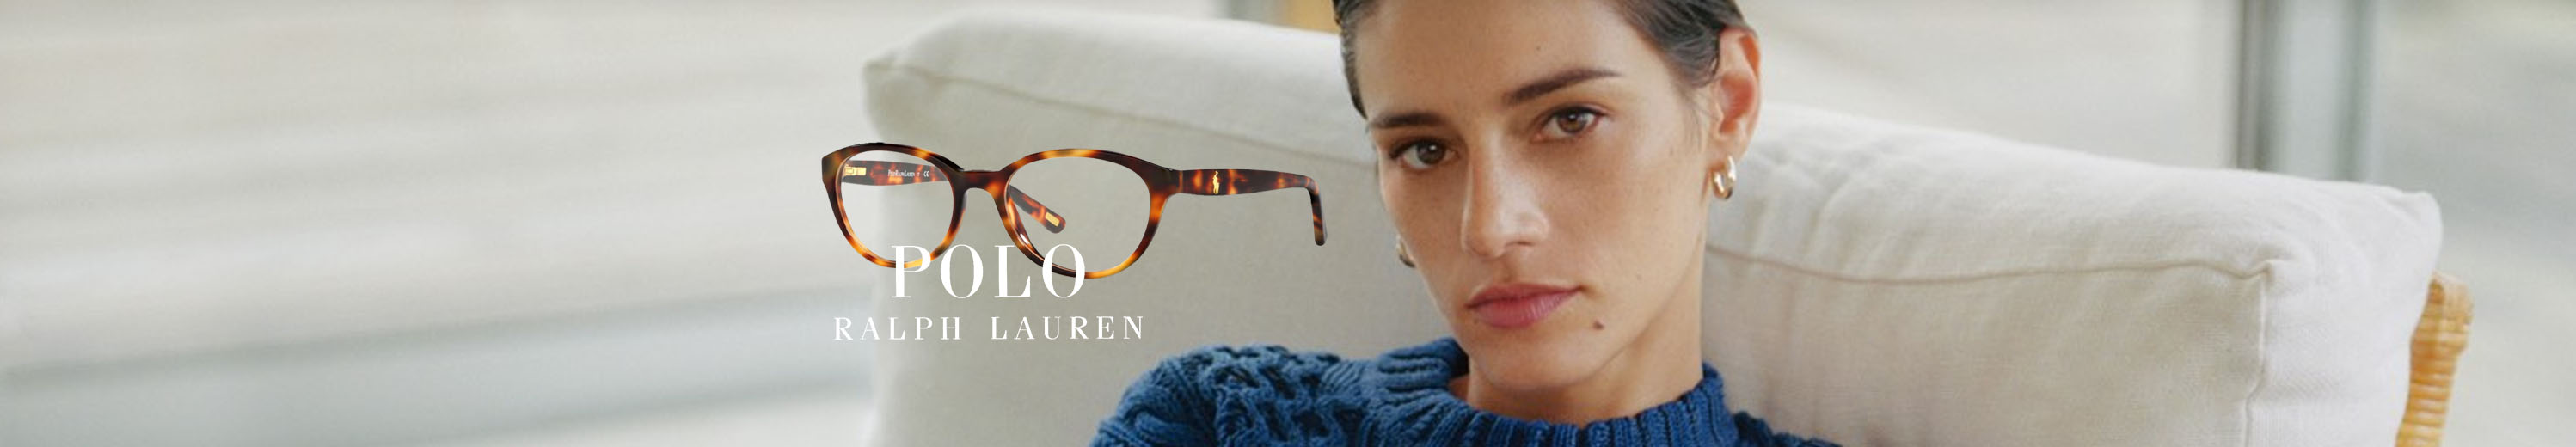 Polo Eyeglasses for Women